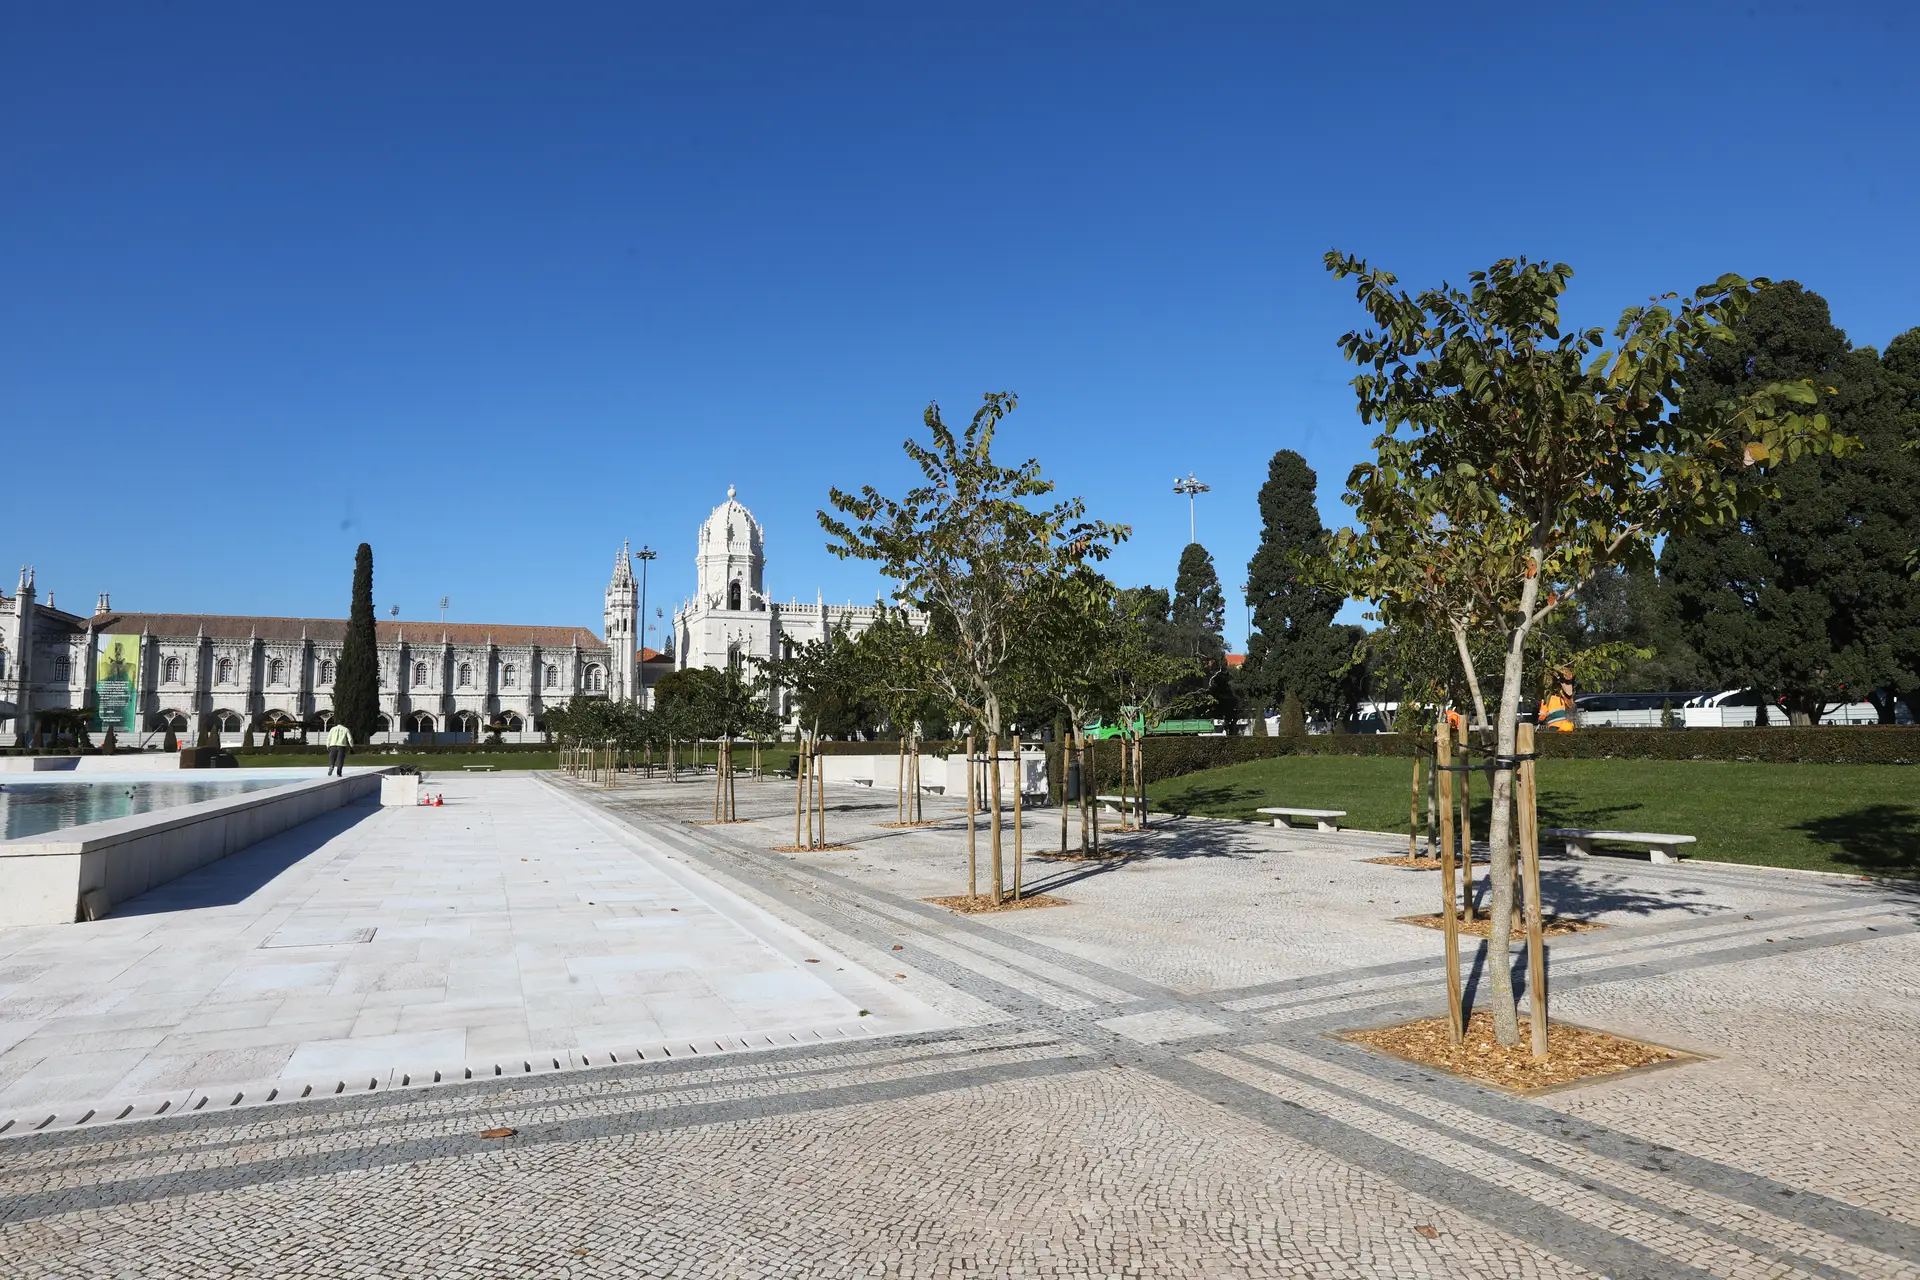 Com mais árvores, cadeiras à volta da fonte e brasões em calçada, o Jardim da Praça do Império, em Belém, vai reabrir